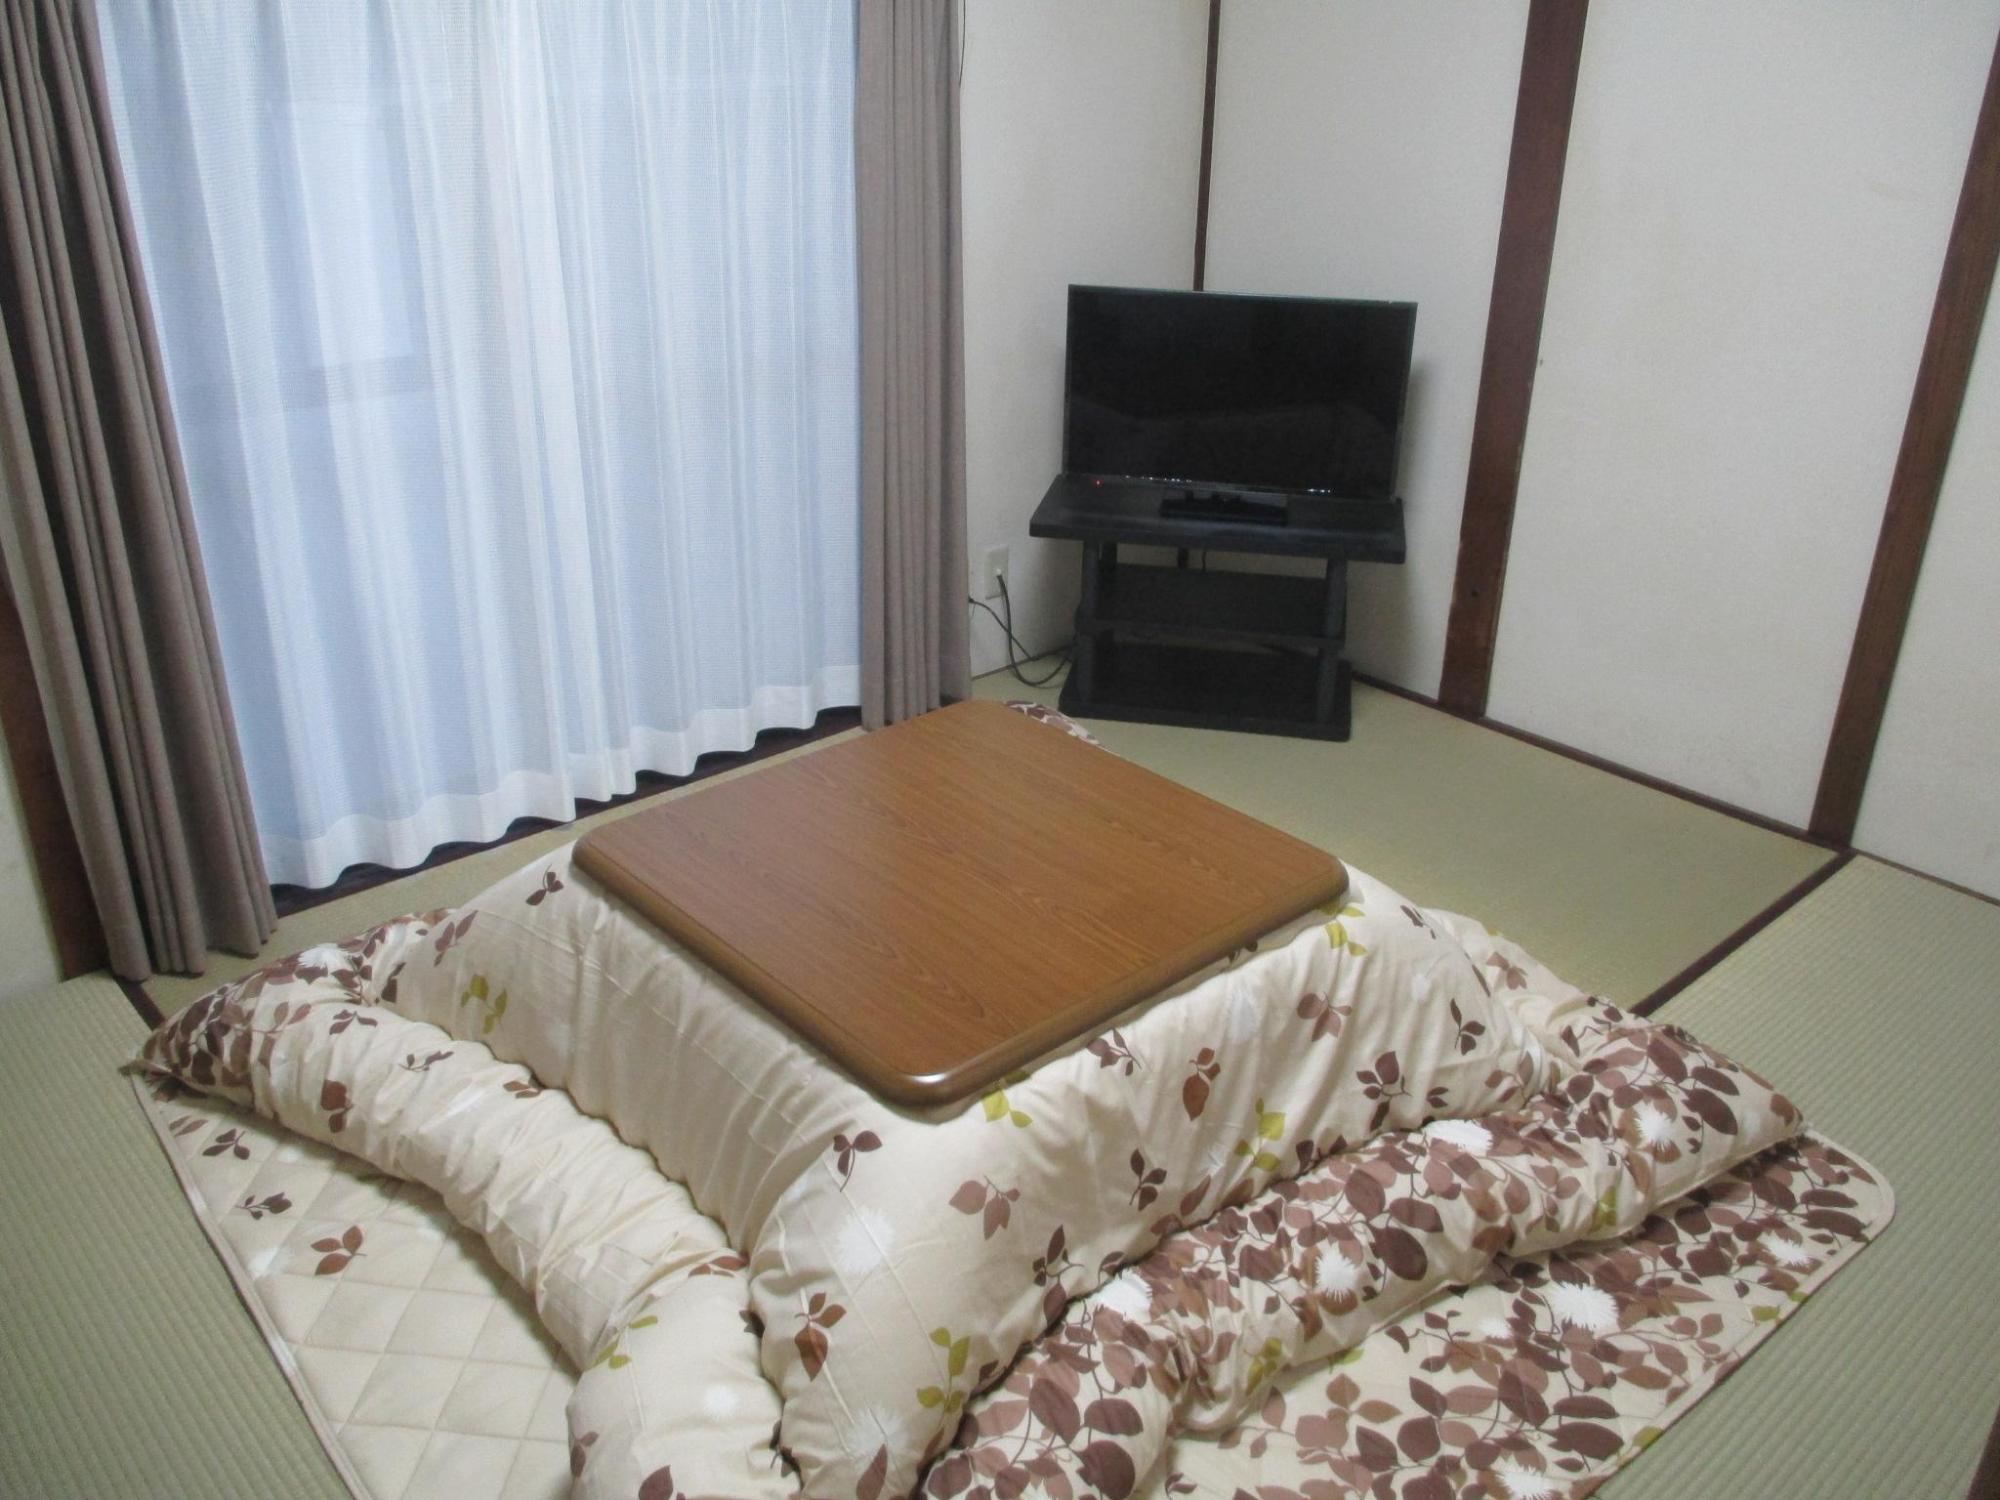 和室の内観を撮影した写真。奥にはテレビ、部屋の中央にはコタツが置かれている。